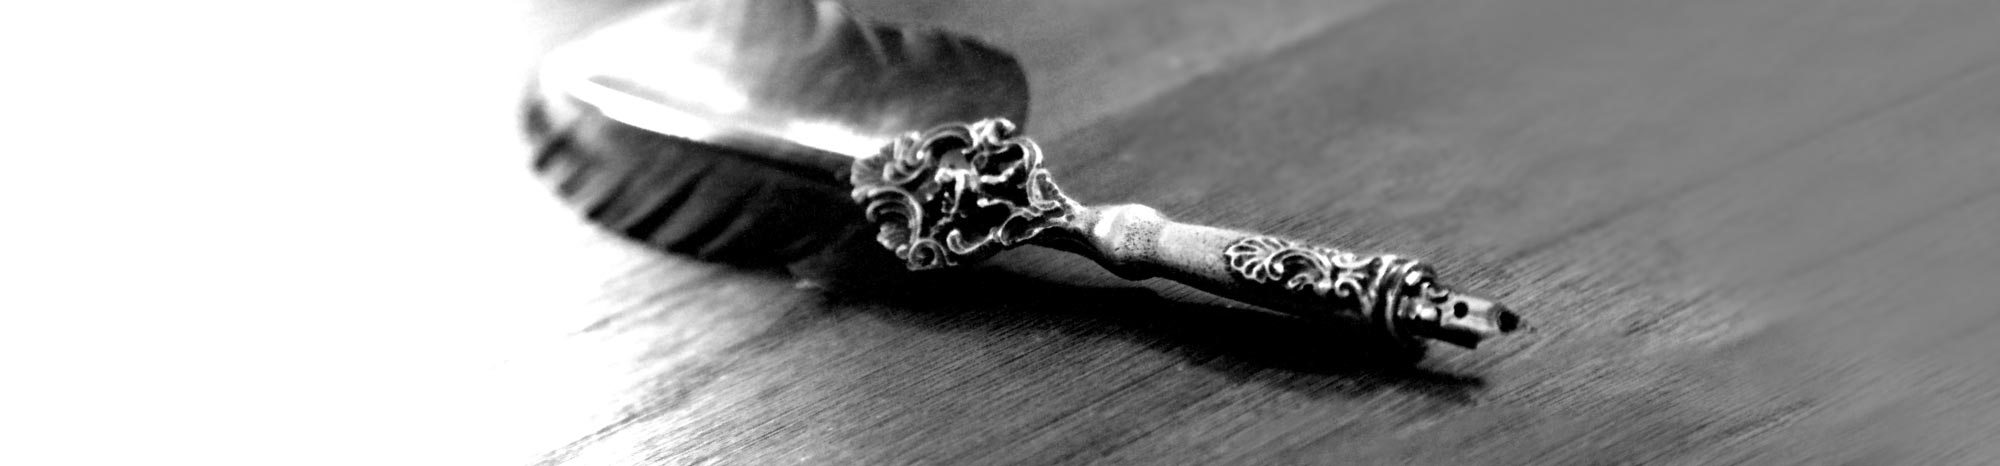 Schreibfeder mit Holzgriff und Ornamentik in Schwarz-Weiß